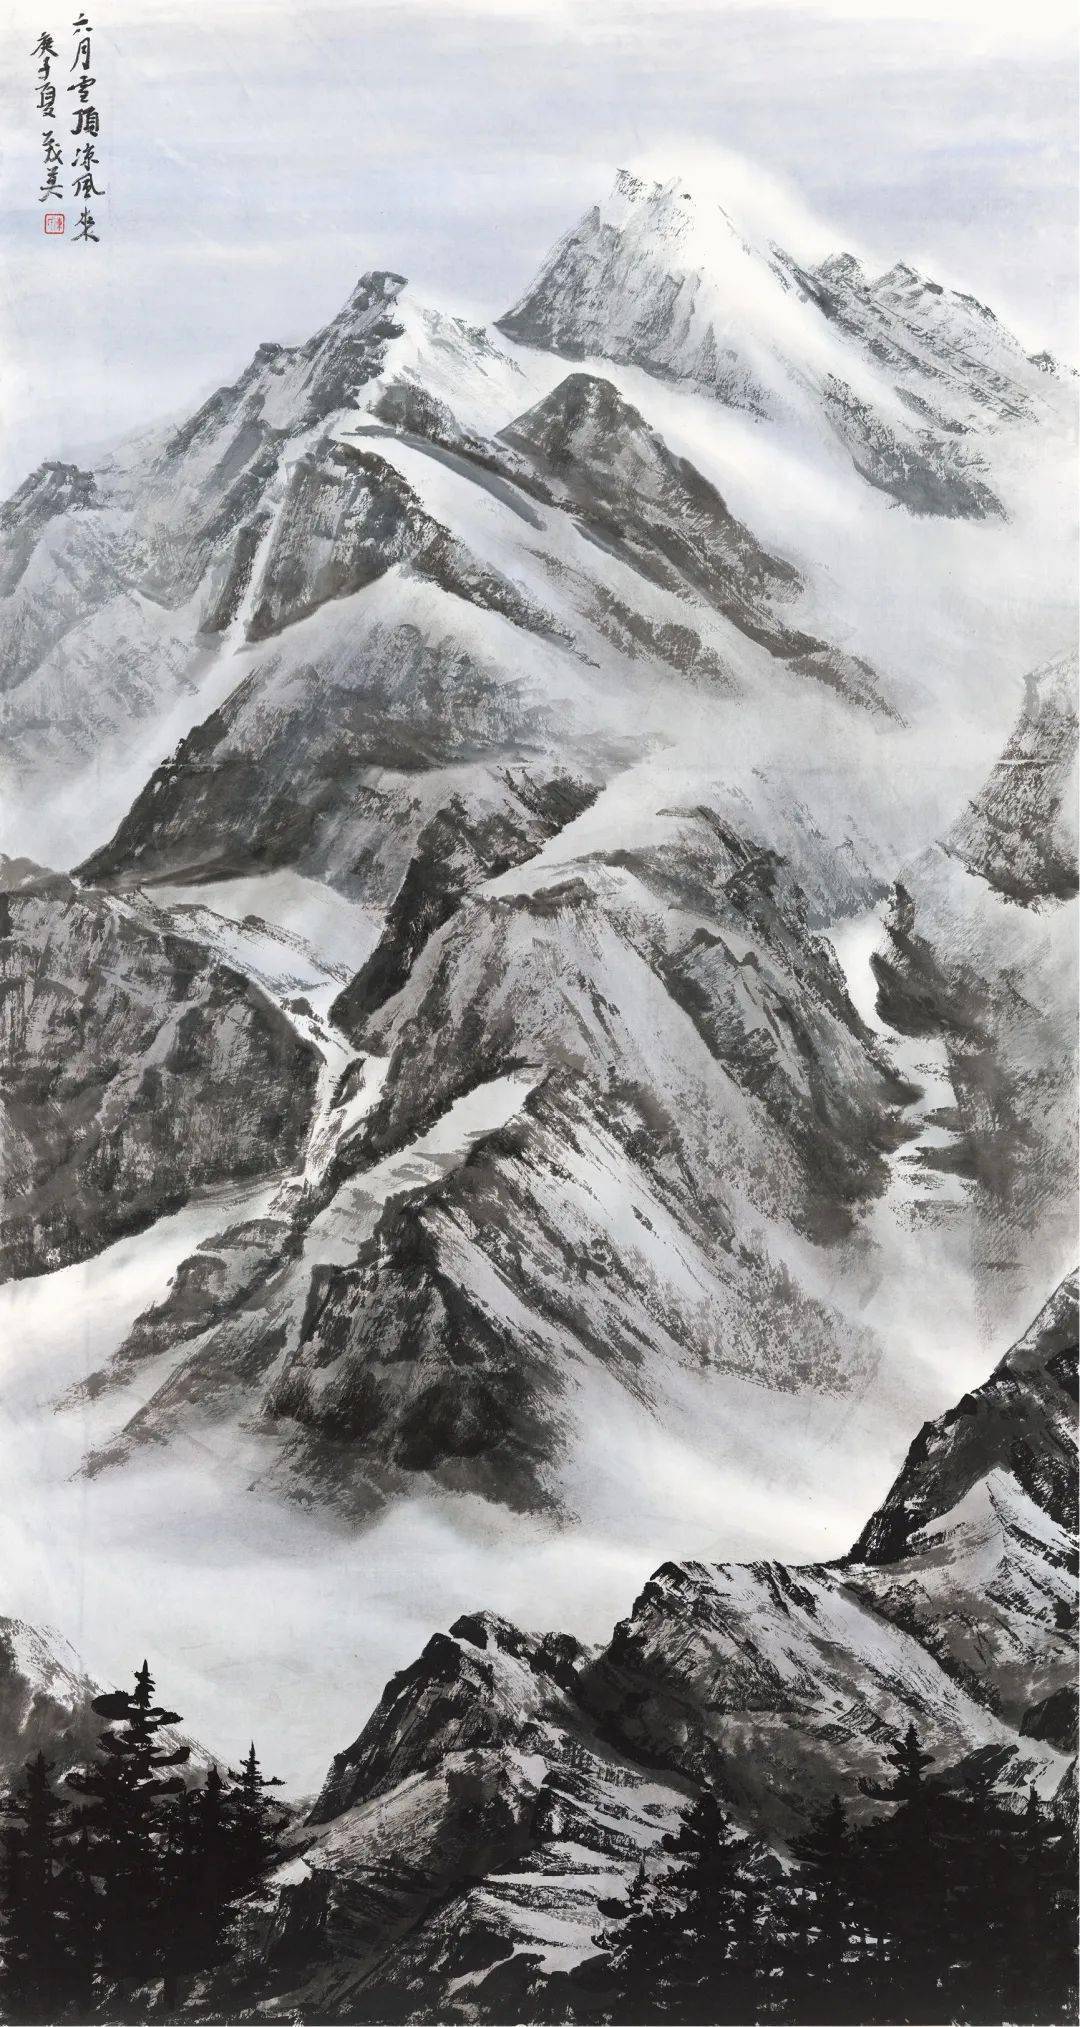 大国脊梁61圣境峰光高原雪山画派作品展陕西西安开幕